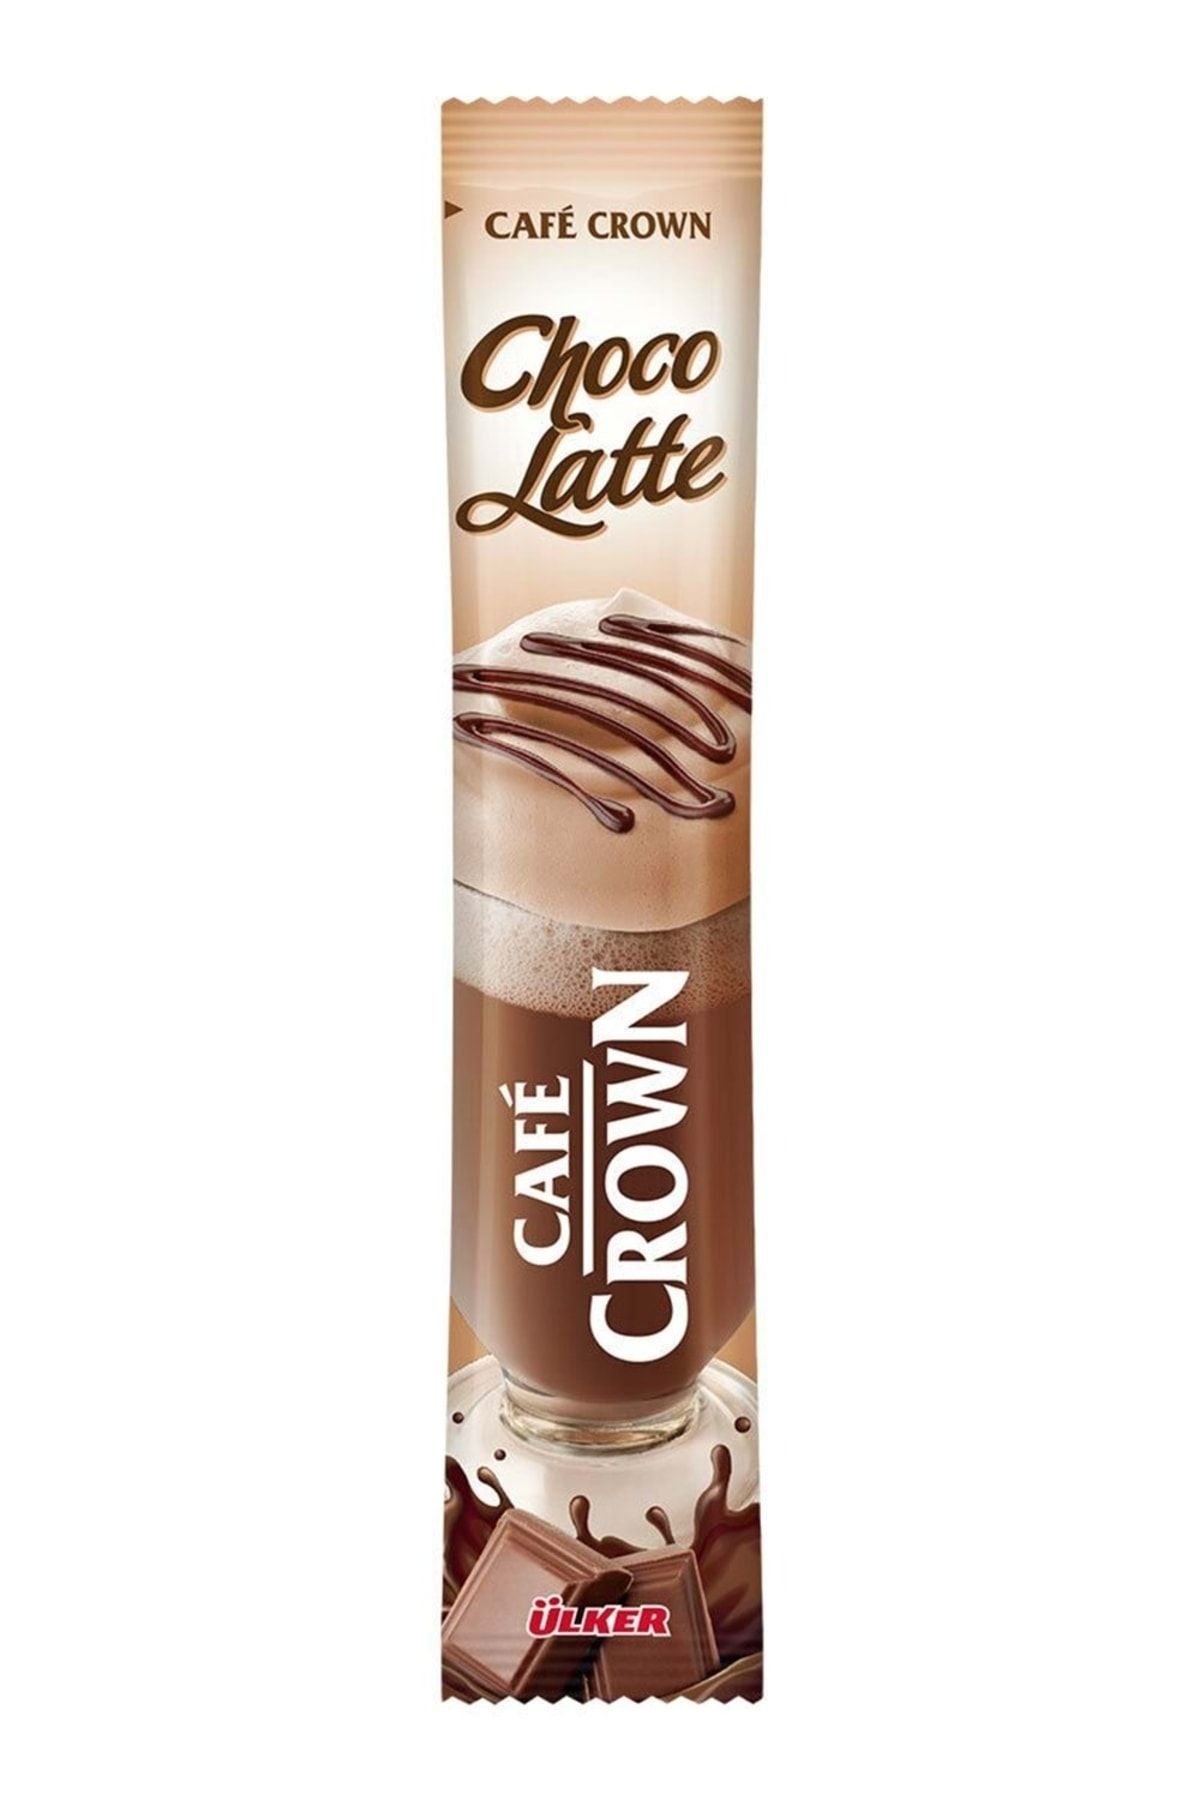 Choco latte. Cafe Crown Choco Latte. Cafe Crown Ulker. Cafe Crown логотип. Cafe Crown Ulker 100гр 50шт.